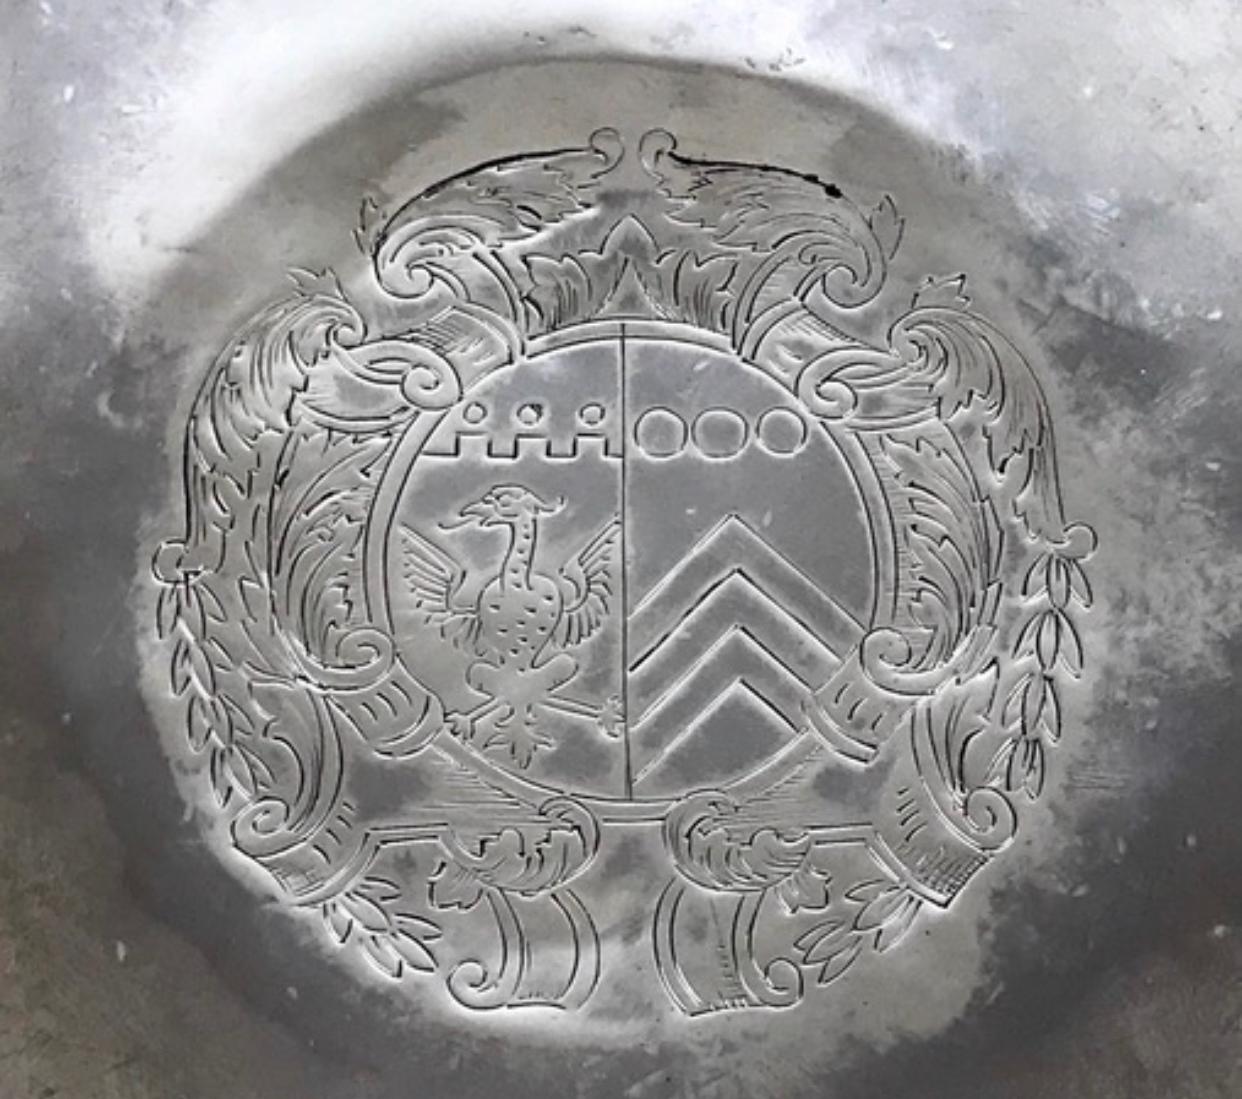 Eine seltene frühe portugiesische Tazza aus massivem Sterlingsilber in sehr gutem Zustand, gehämmertes Silber. 

Rundes Oberteil auf spitz zulaufendem, ausgestelltem Fuß. In der Mitte des oberen Teils befindet sich ein Wappen.

Sowohl der Deckel als